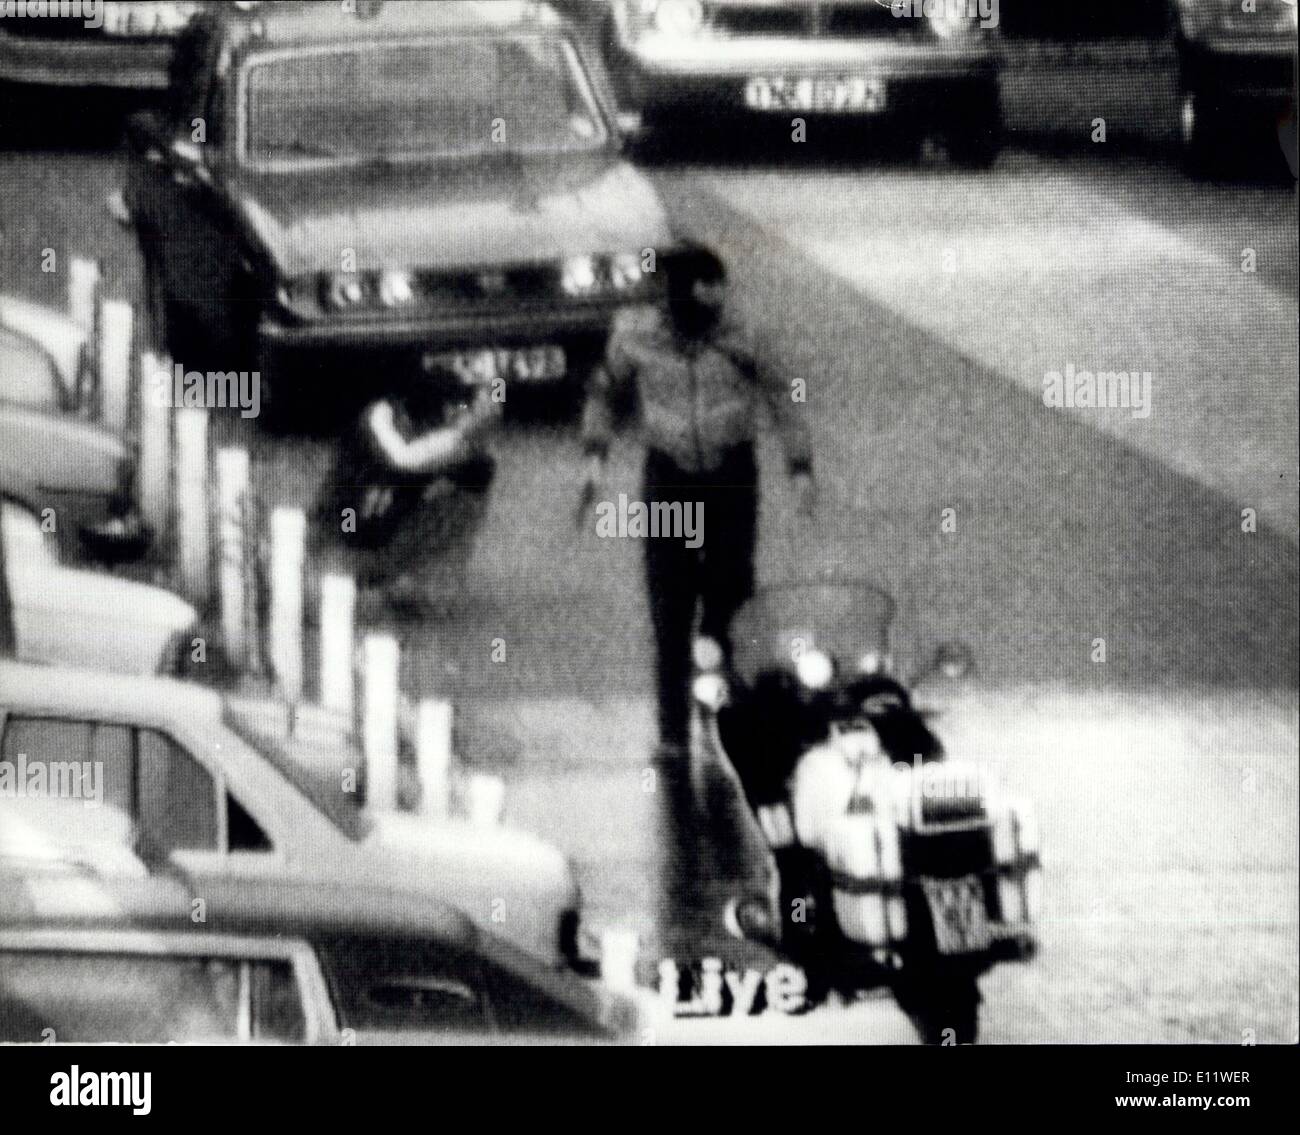 Mai 06, 1980 - SAS Squad Sturm iranischen Botschaft und Geiseln: Der 6-tägigen Belagerung der iranischen Botschaft in London Knightsbridge endete gestern Abend in einer gemeinsamen Polizei - Special Air Services Regt den Betrieb, in dem die verbleibenden 19 Geiseln heraus gebracht wurden lebend vom bombardiert und brning buildingwith drei der fünf Terroristen erschossen, einer verwundeten und der andere von SAS übernommen. Unter den Geiseln befreit wurden die drei Briten - PC Trevor Sperren. Simon Harris, ein BBC Sound recordists, und Herr Ronald Morris, eine Sekretärin bei der Botschaft Stockfoto